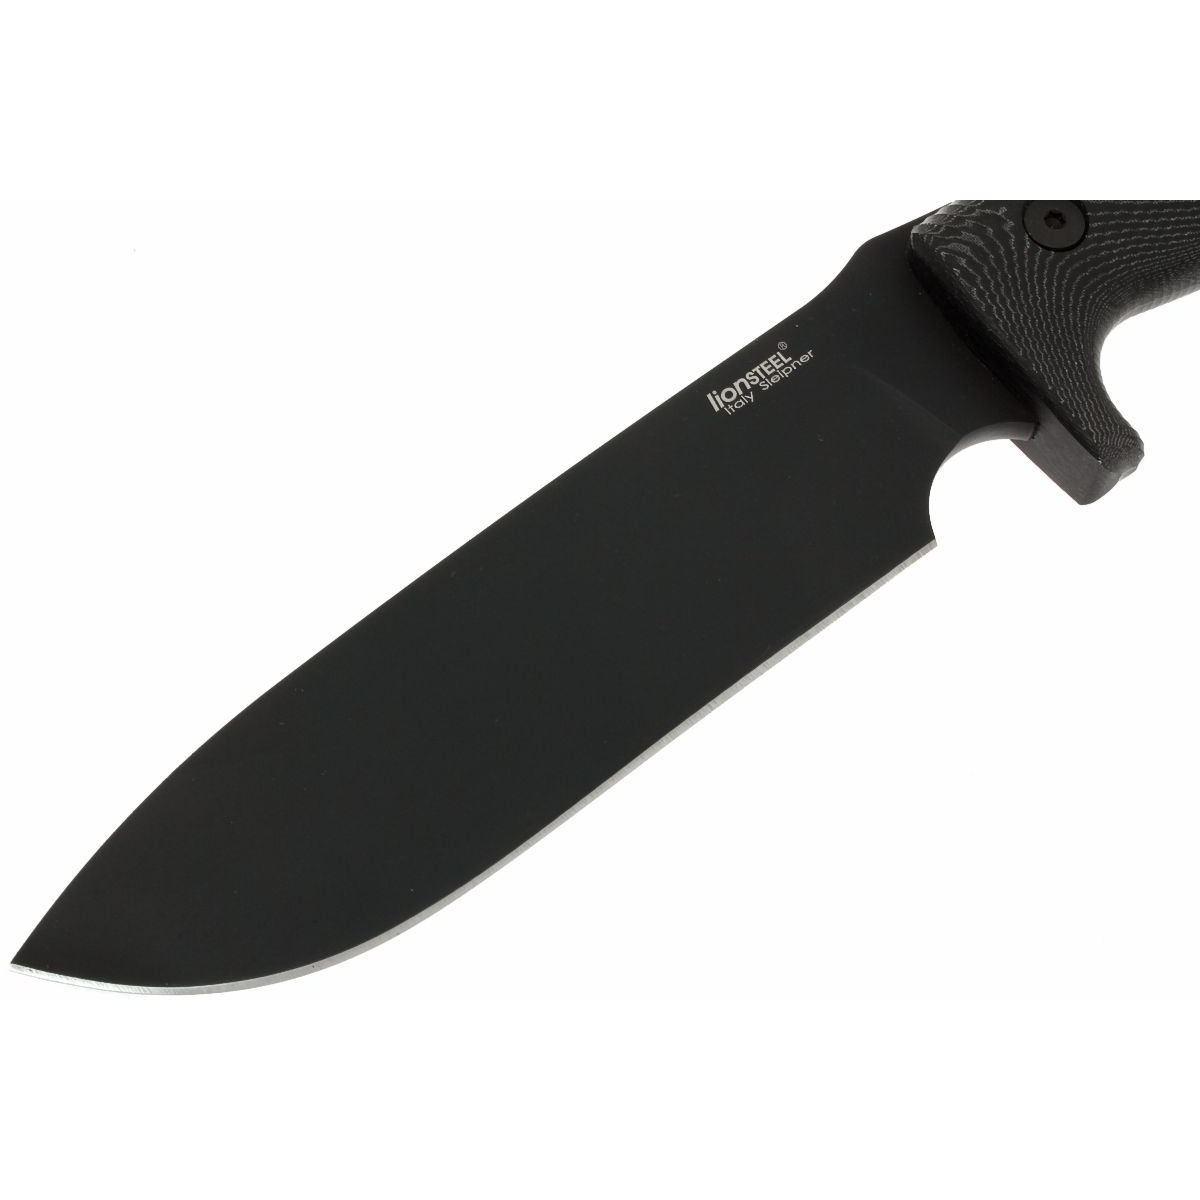 Нож с фиксированным клинком LionSteel M7 MB, сталь Sleipner, рукоять Black micarta - фото 3